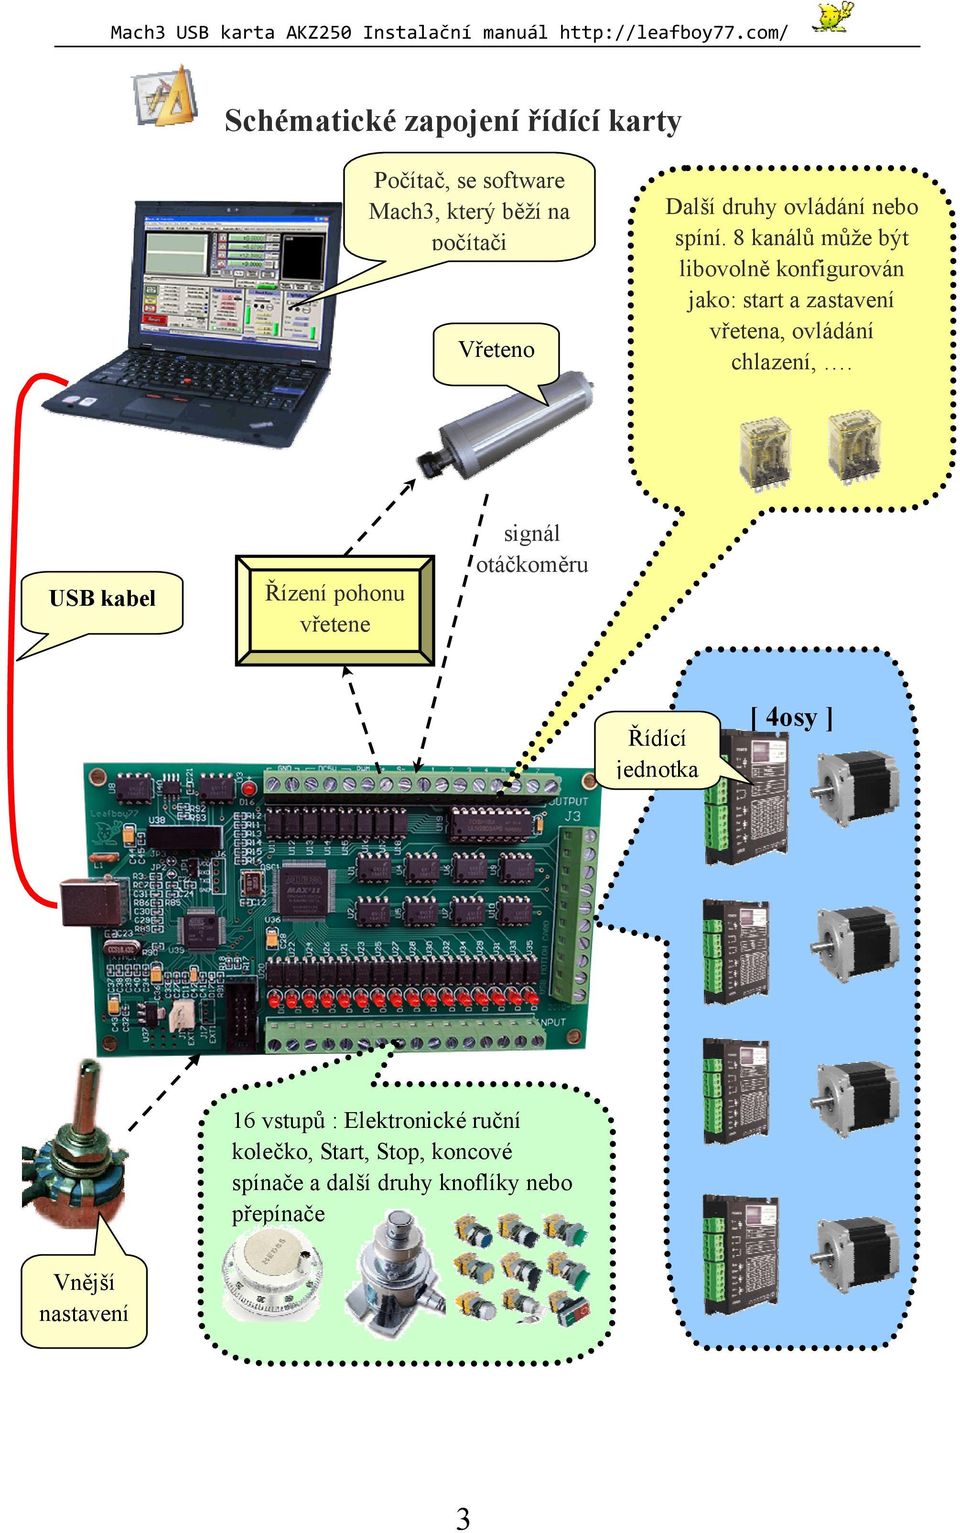 USB Motion Control Card AKZ250 Instalační příručka - PDF Free Download